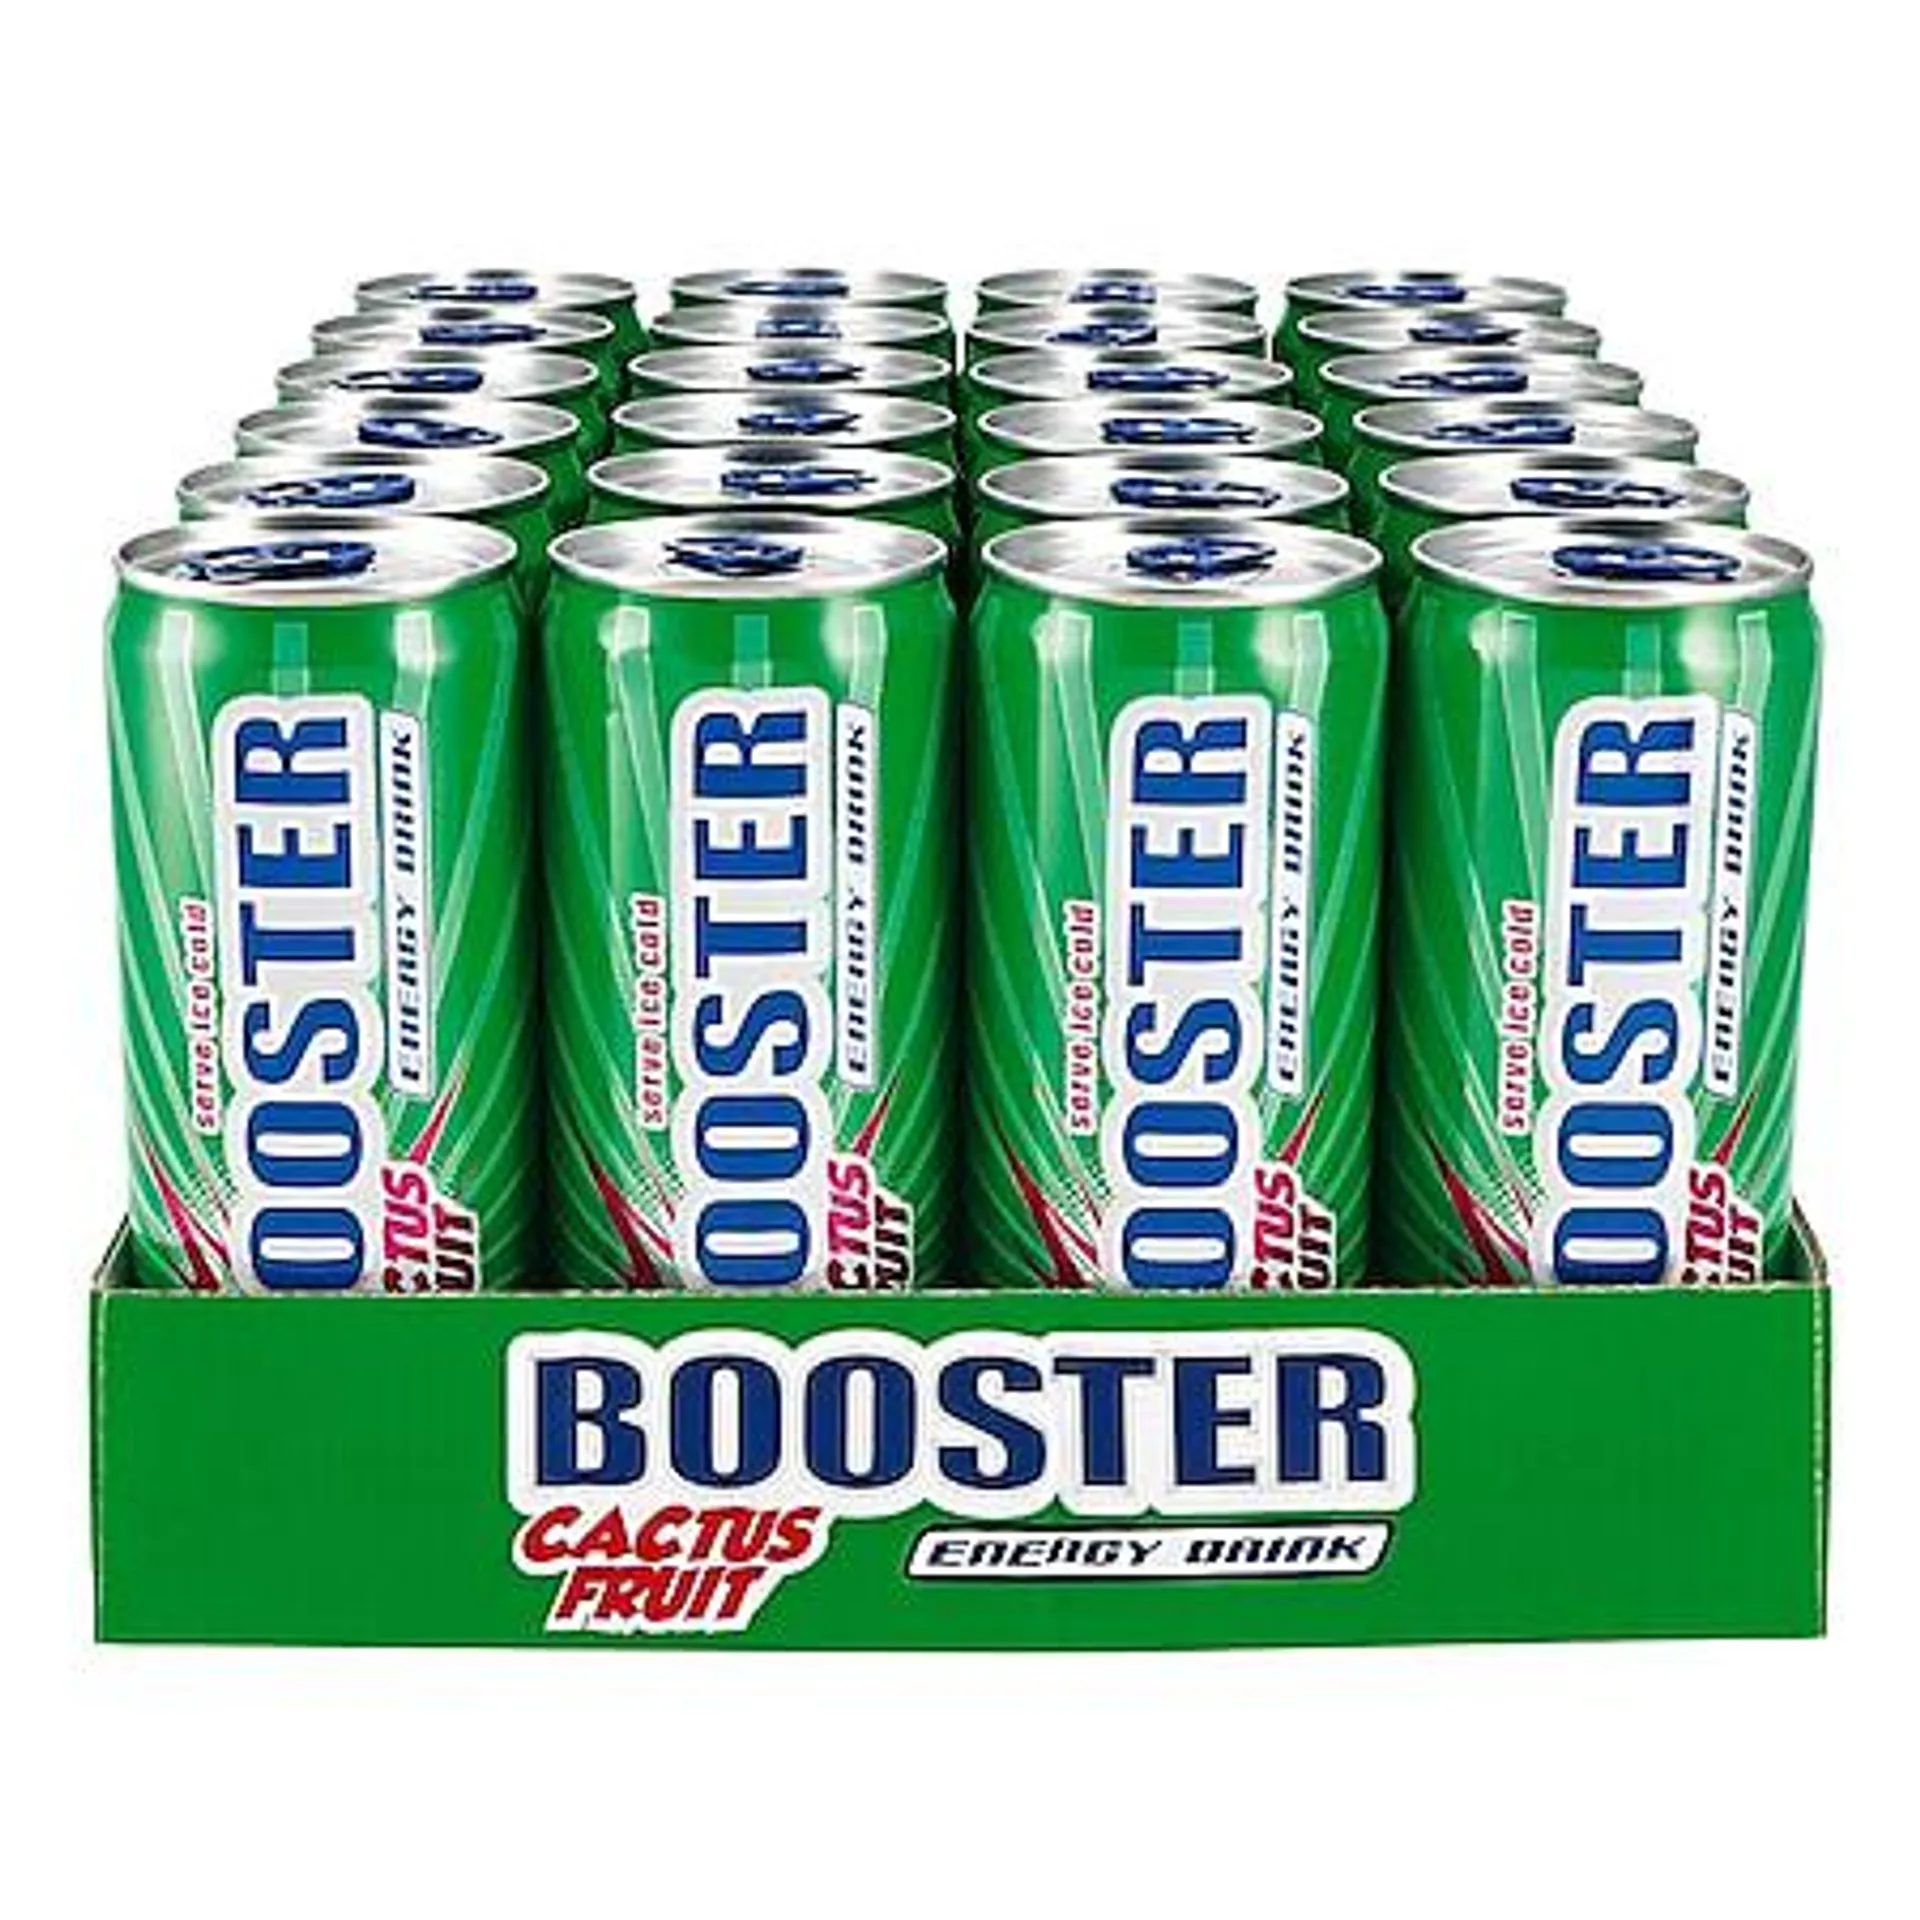 Booster Energy Drink Kaktusfrucht 0,33 Liter Dose, 24er Pack